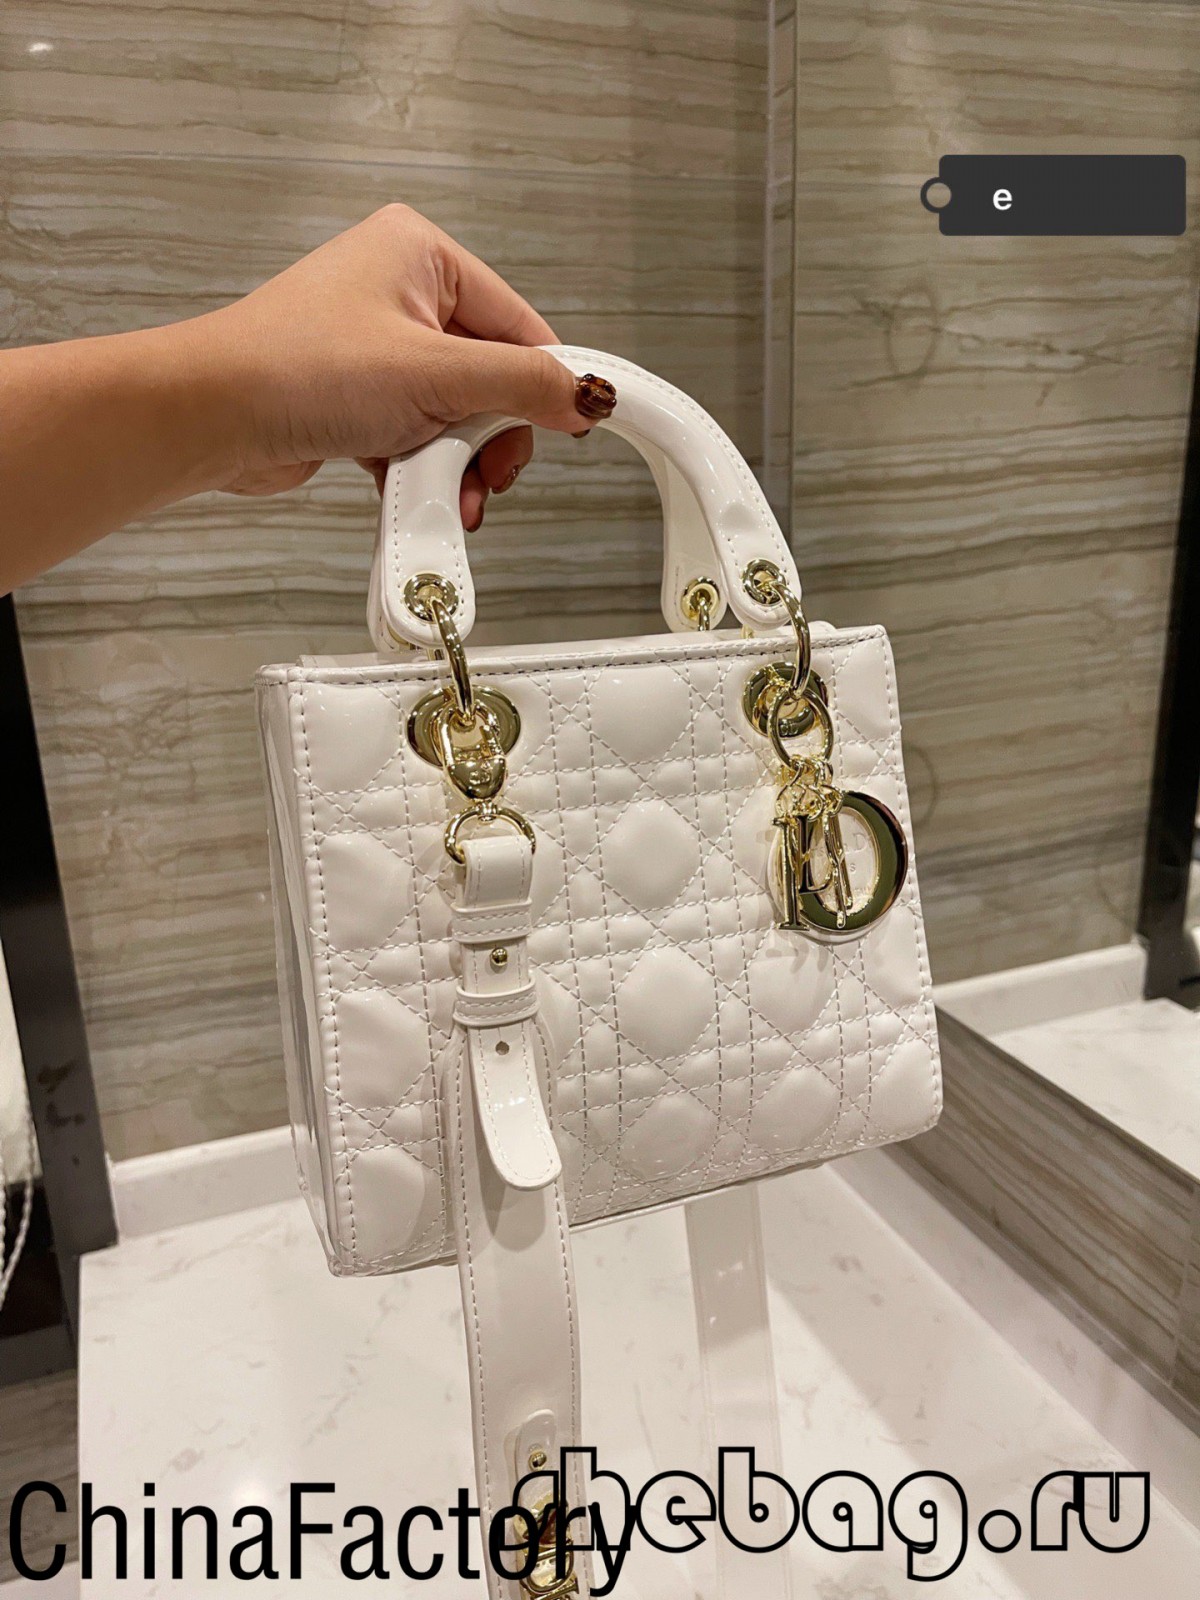 Huippulaadukas Replica Lady Dior -minilaukku verkkomyynti (2022 kuumin) - Paras laatu Fake Louis Vuitton Bag -verkkokauppa, Replikan suunnittelijalaukku ru